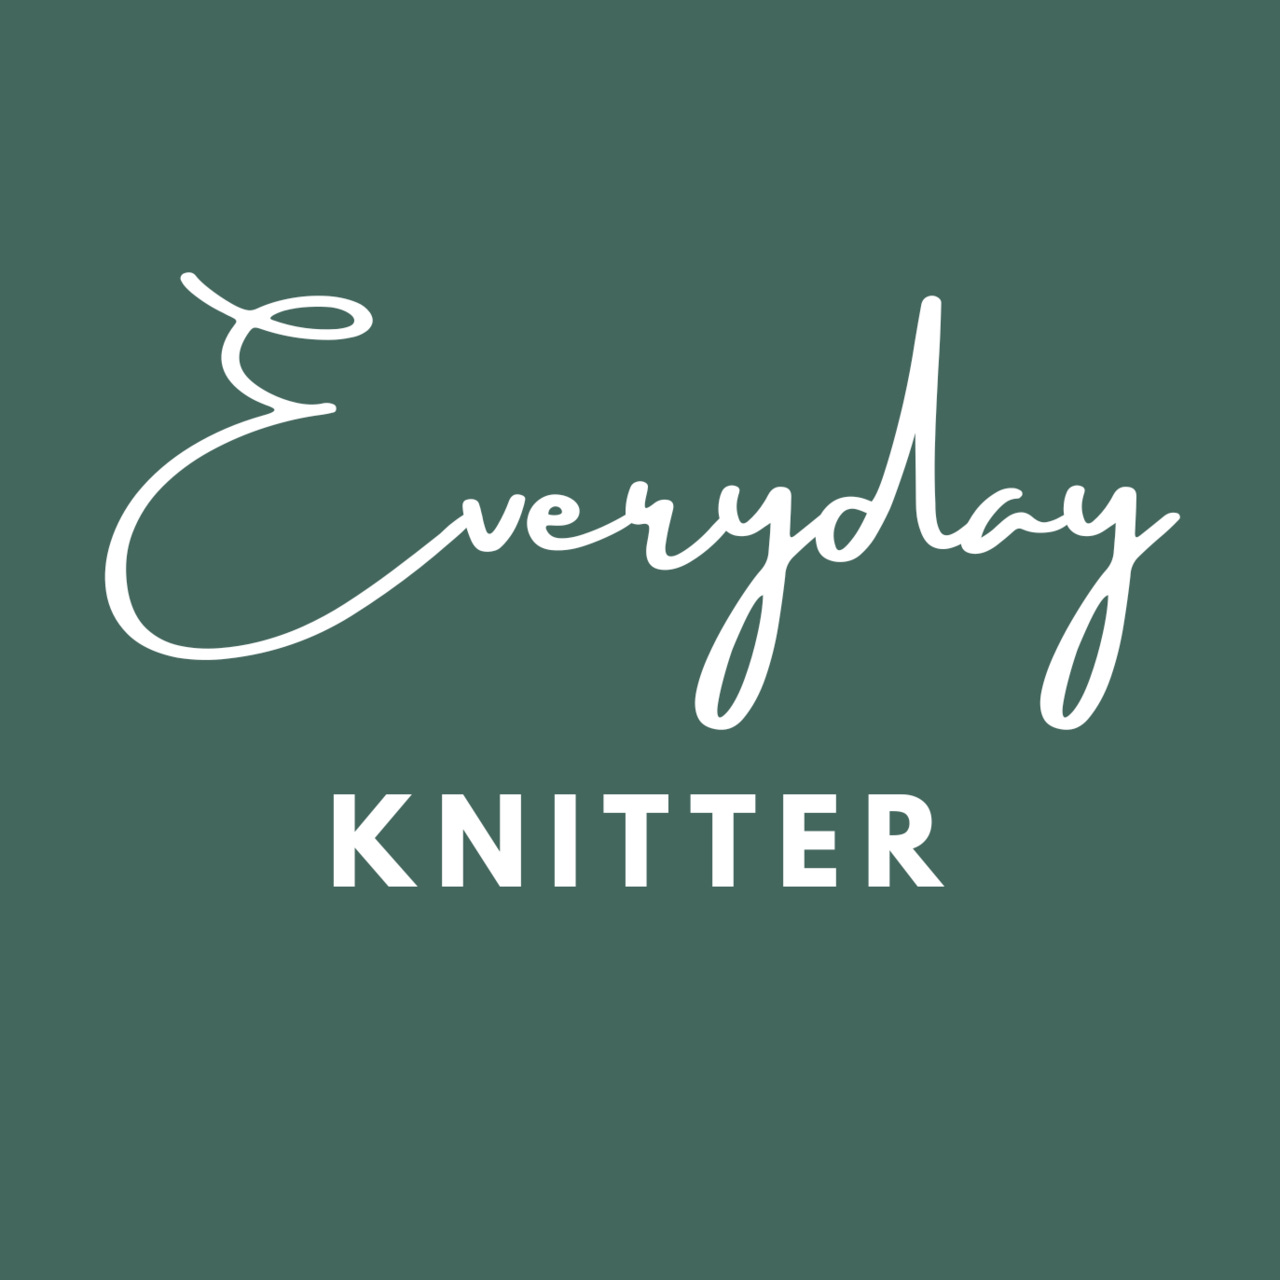 Everyday Knitter